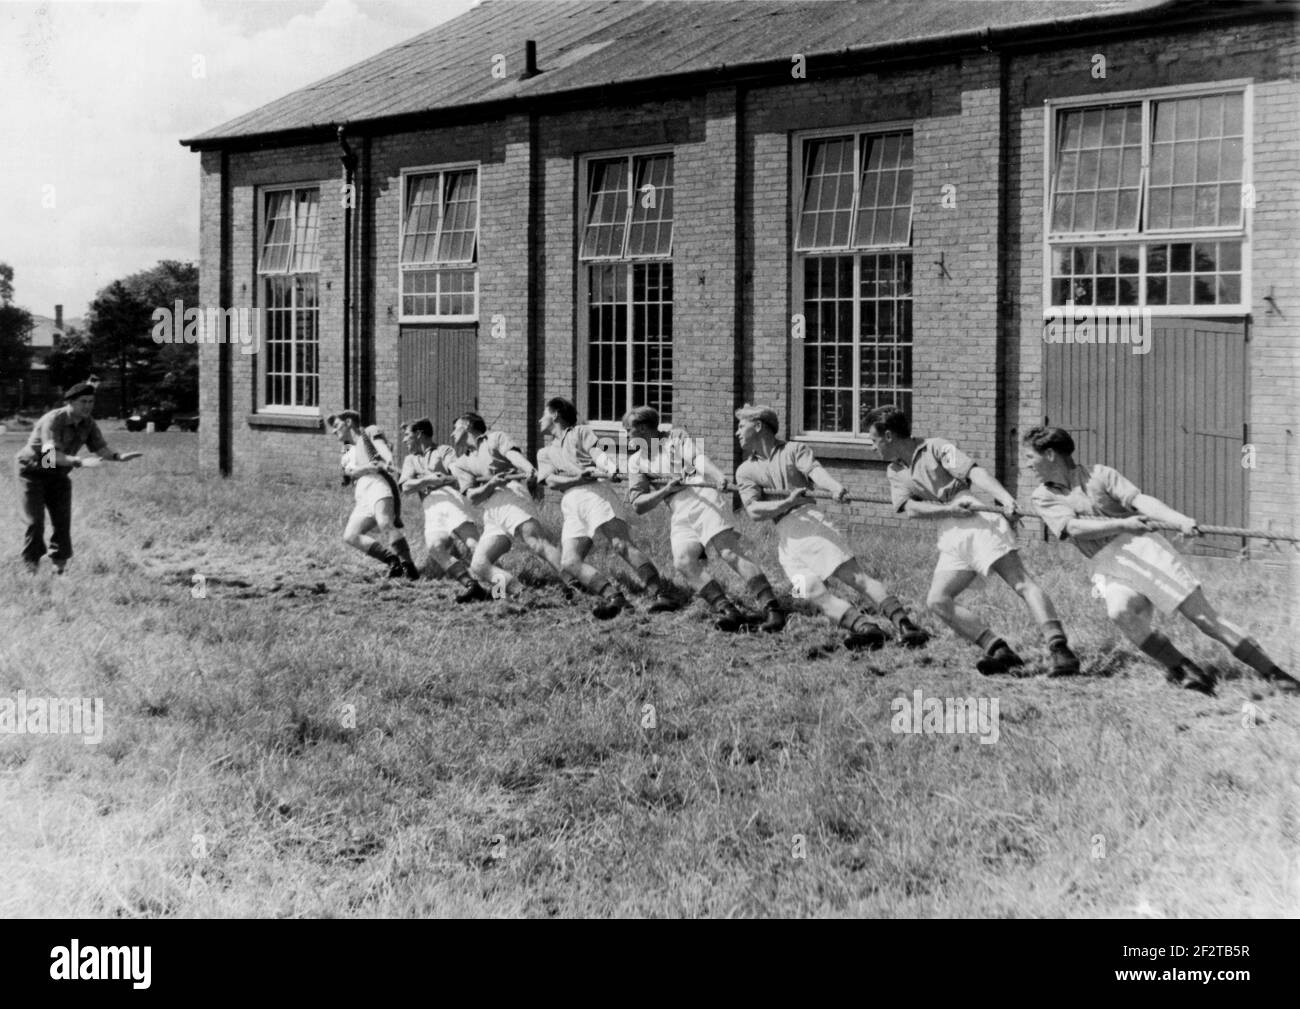 1950s, historischer, nationaler Dienst nach dem Krieg, ein Armeeoffizier, der acht junge Soldaten in ihren Turnschuhen und Armeestiefeln Anweisungen gibt, die bei einer Tauziehen-Übung auf Gras vor ihren Kasernen, England, Großbritannien, an einem Seil ziehen. Stockfoto